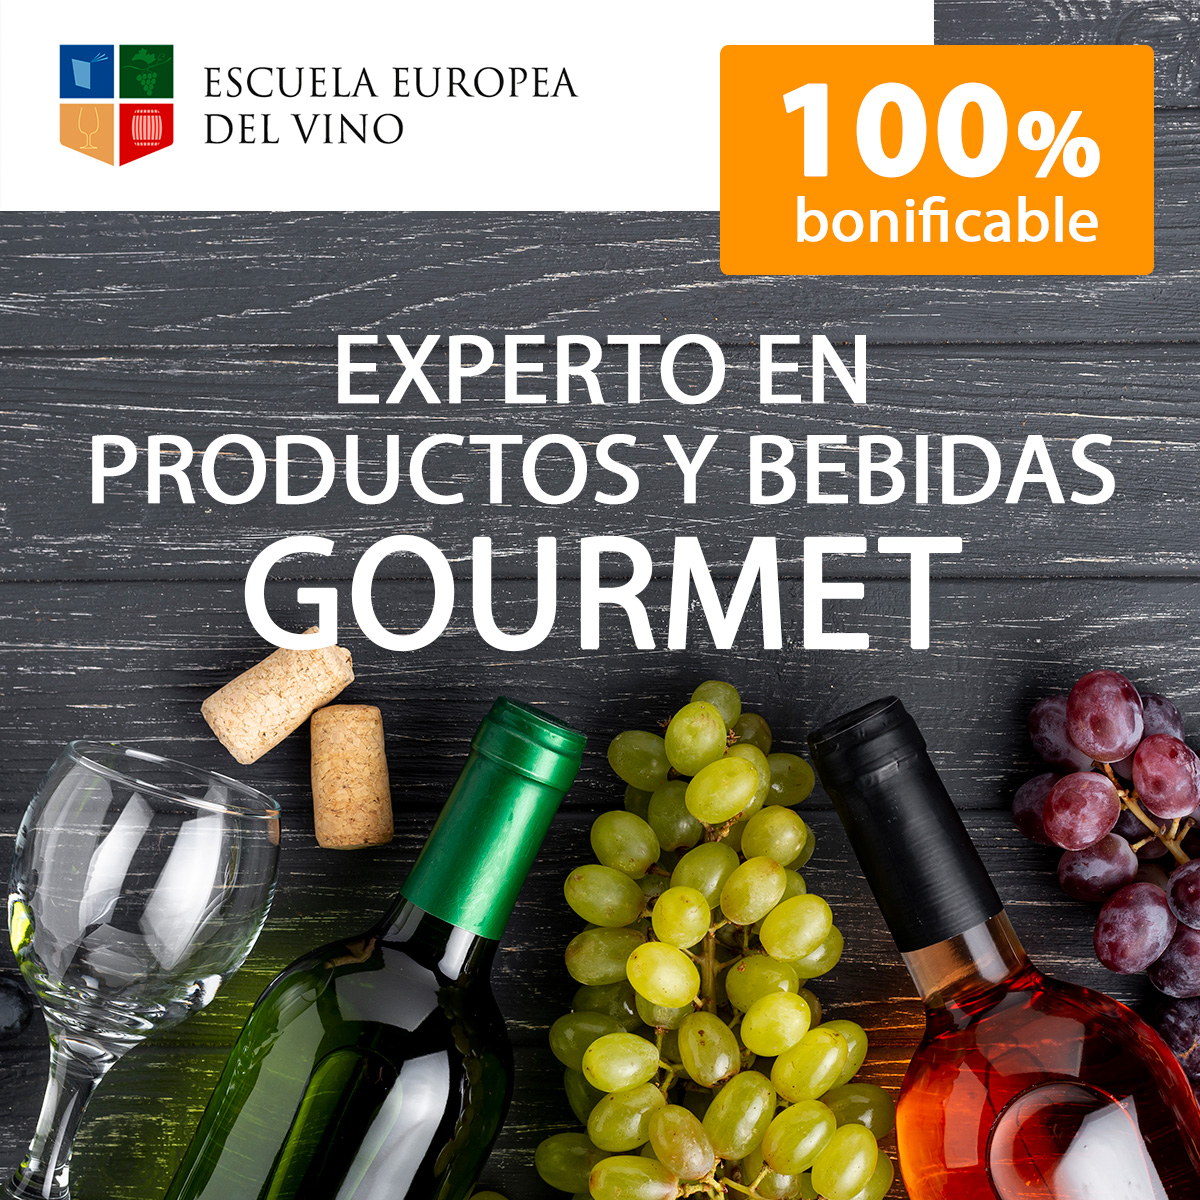 Experto en productos y bebida gourmet Escuela del Vino Europea